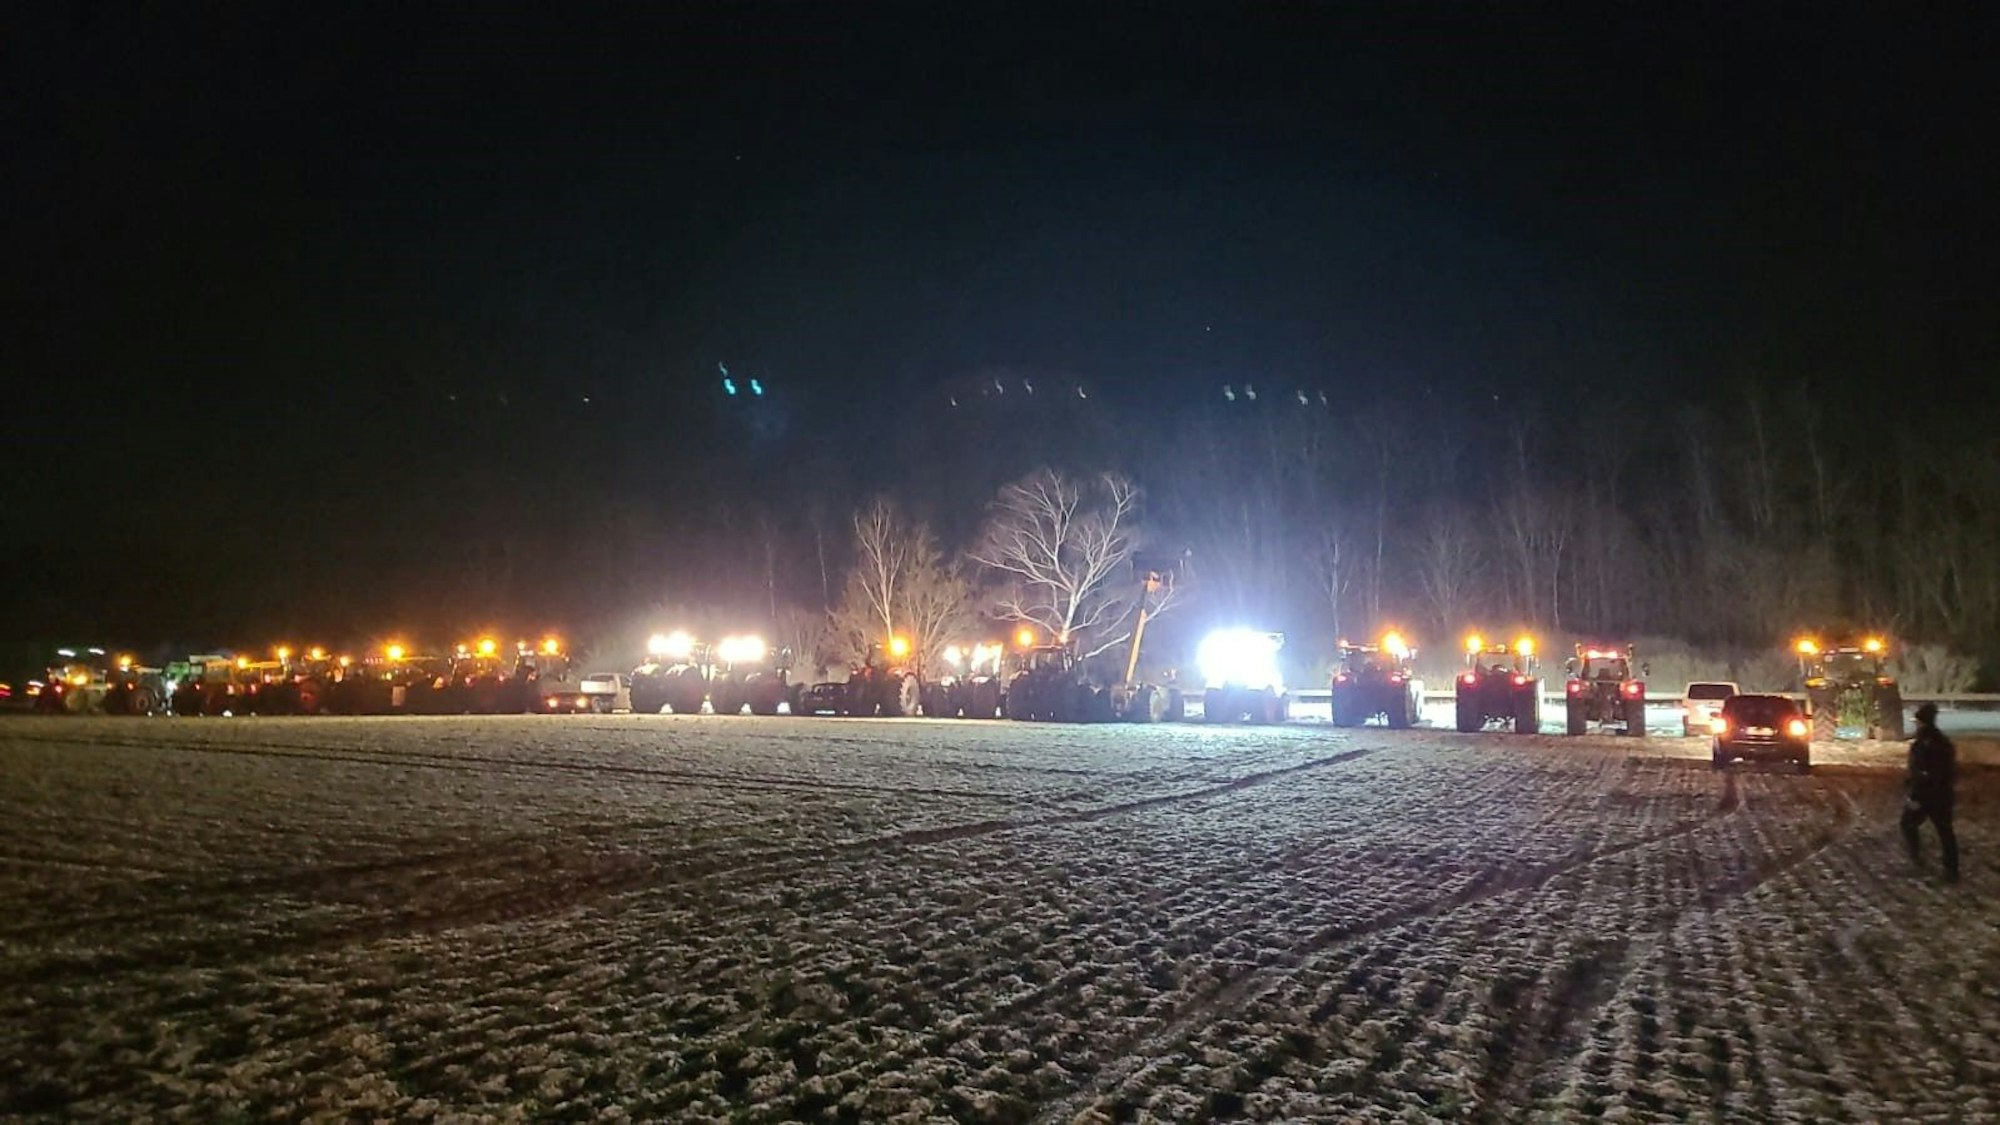 Zahlreiche Traktoren sind an der B266 bei Strempt geparkt, wo ein weiteres Mahnfeuer entzündet wurde.